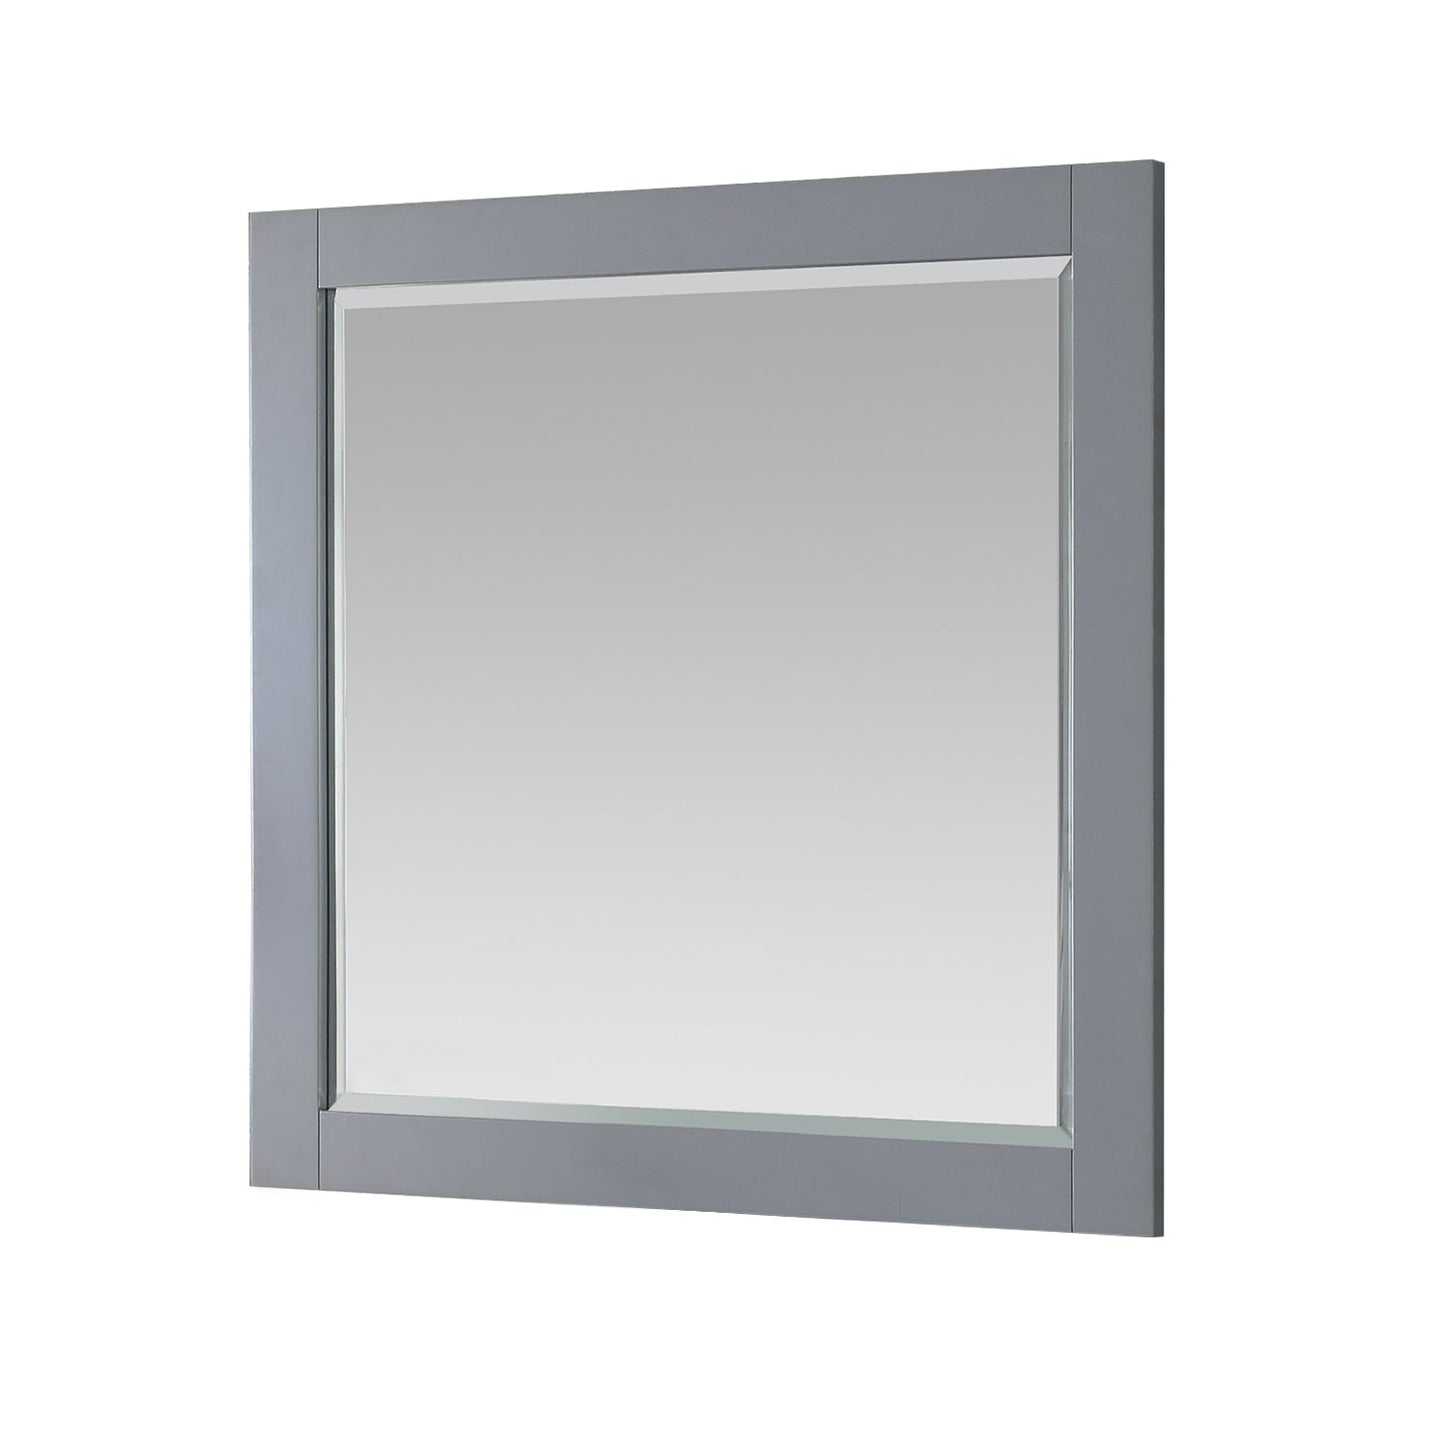 Maribella 34" Rectangular Bathroom Wood Framed Wall Mirror in 
Gray